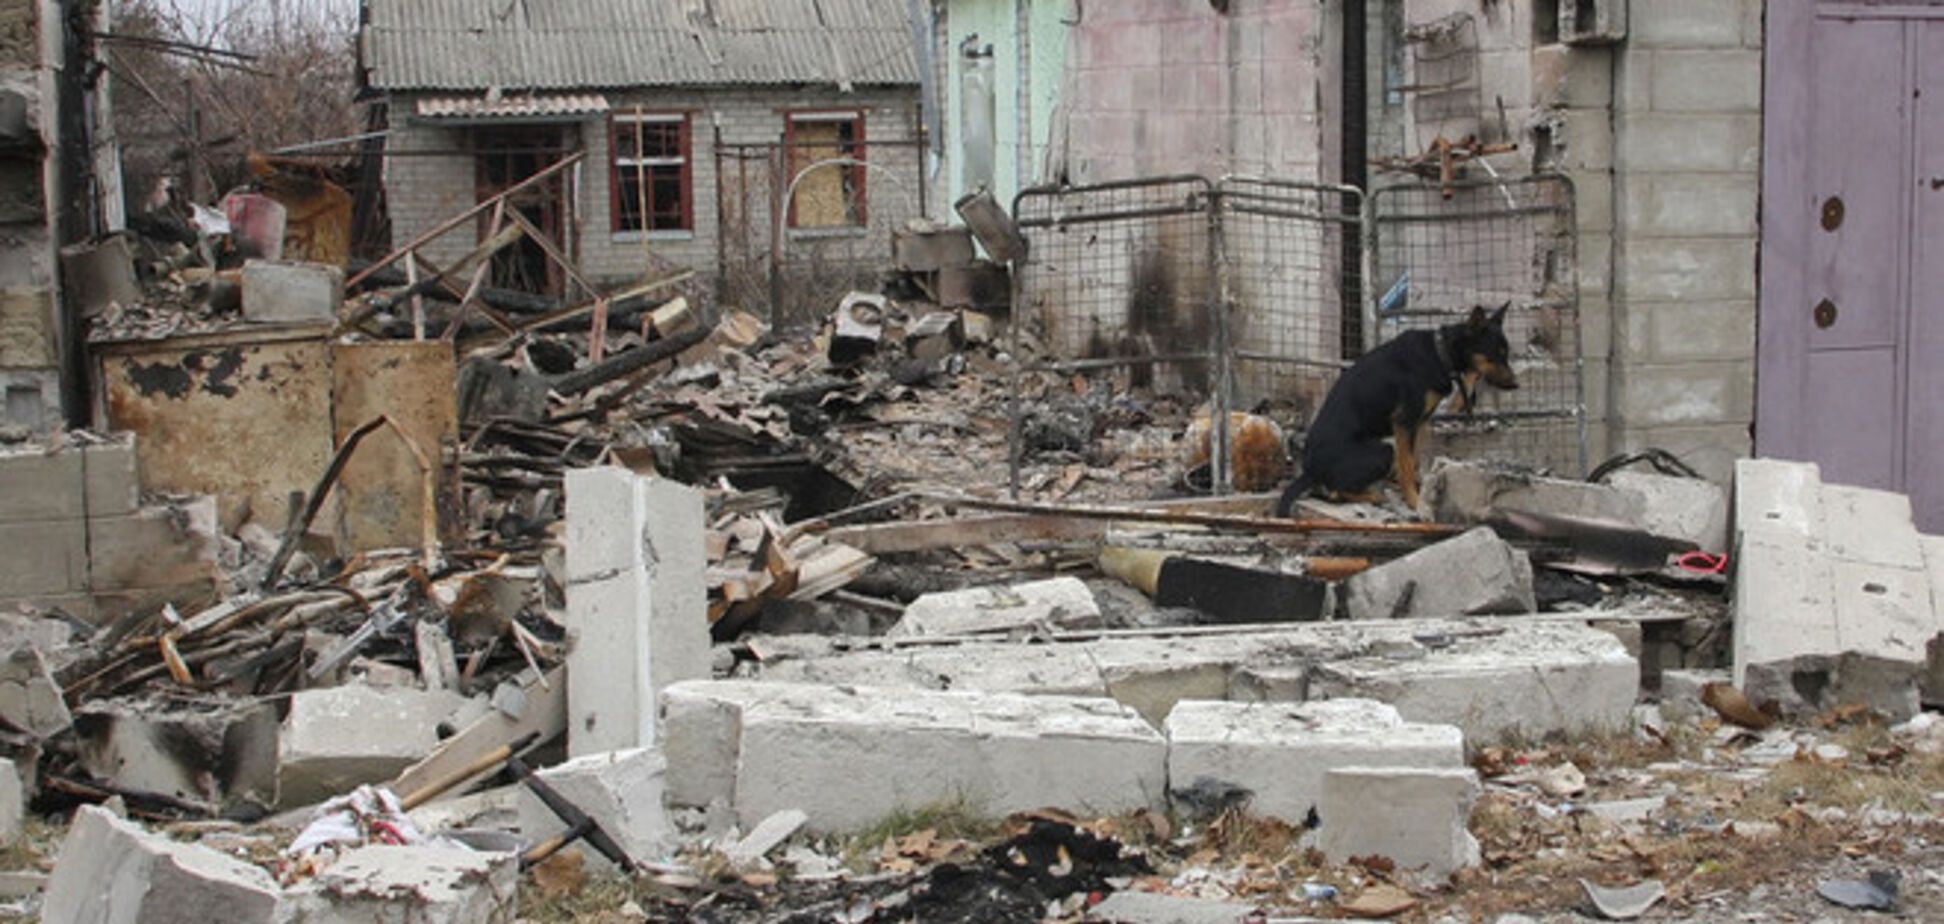 Бахтєєва: Україна знаходиться в стані гуманітарної катастрофи і вимагає термінової міжнародної допомоги